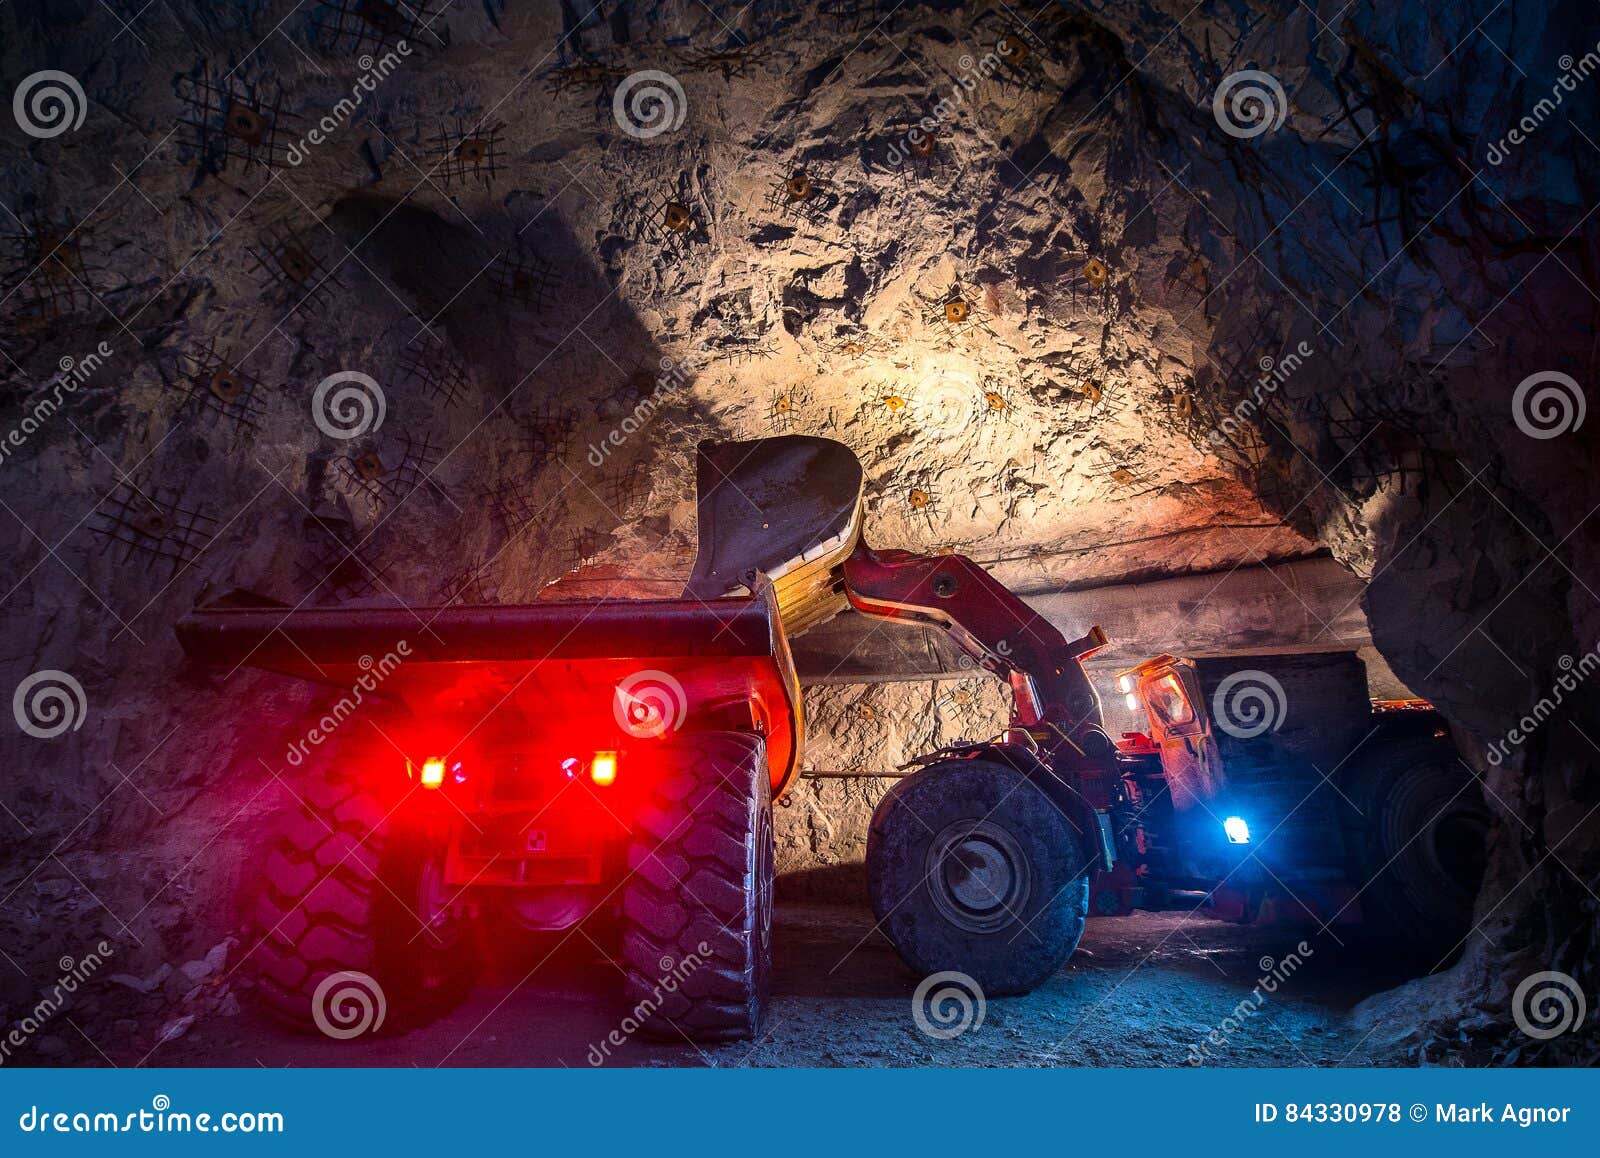 gold mining underground